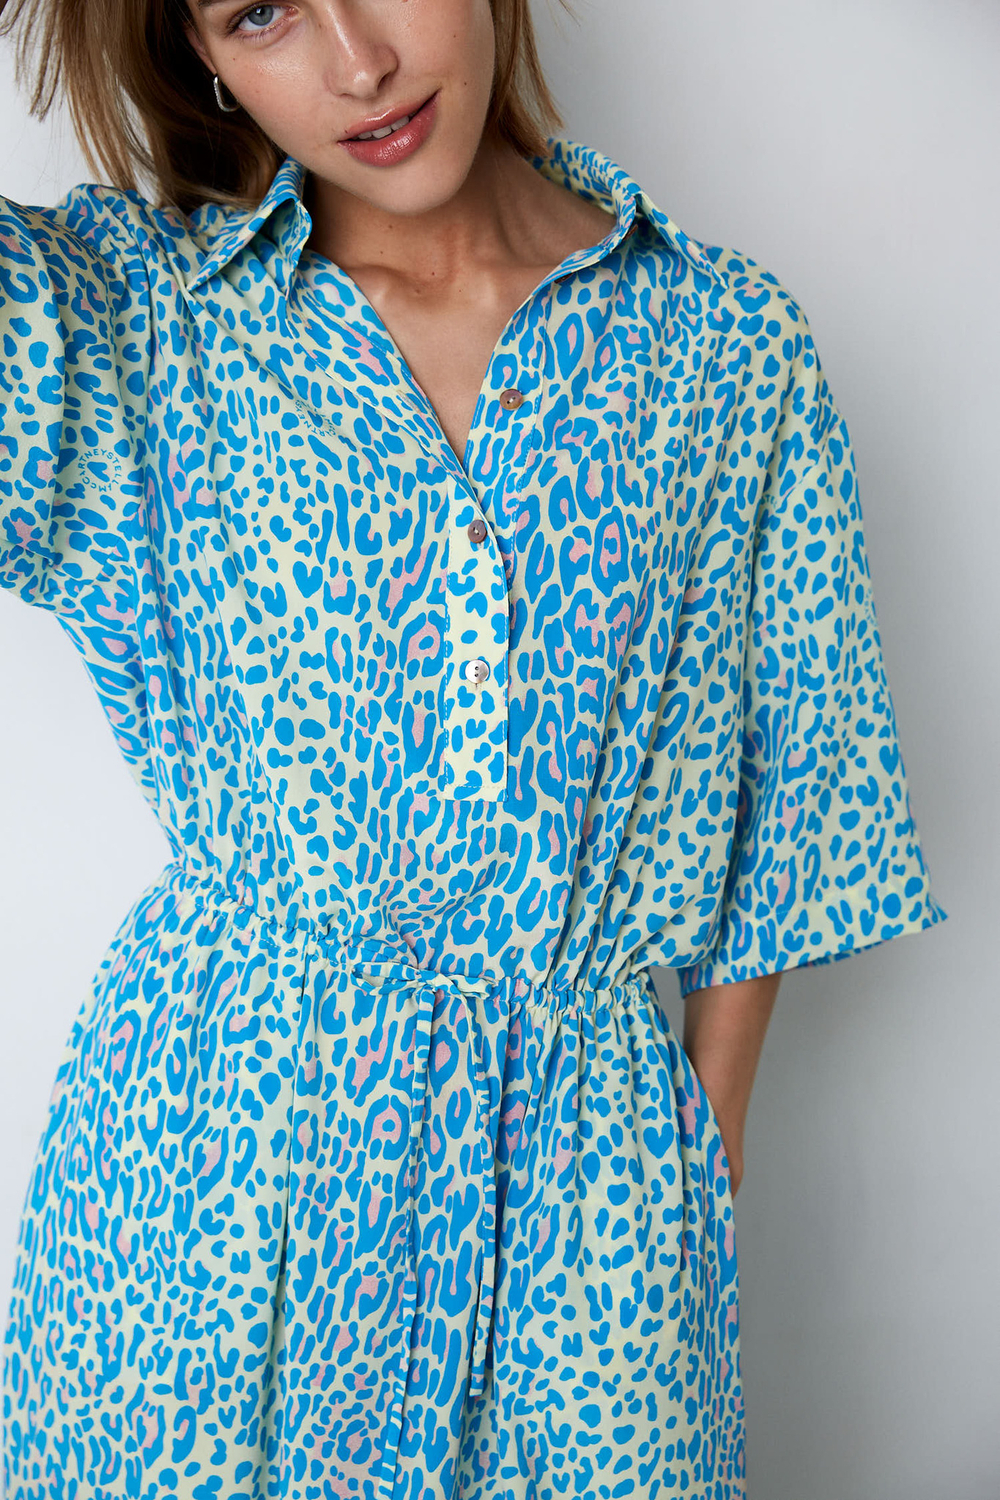 Платье из шелка Стелла Маккартни на кулисе леопард